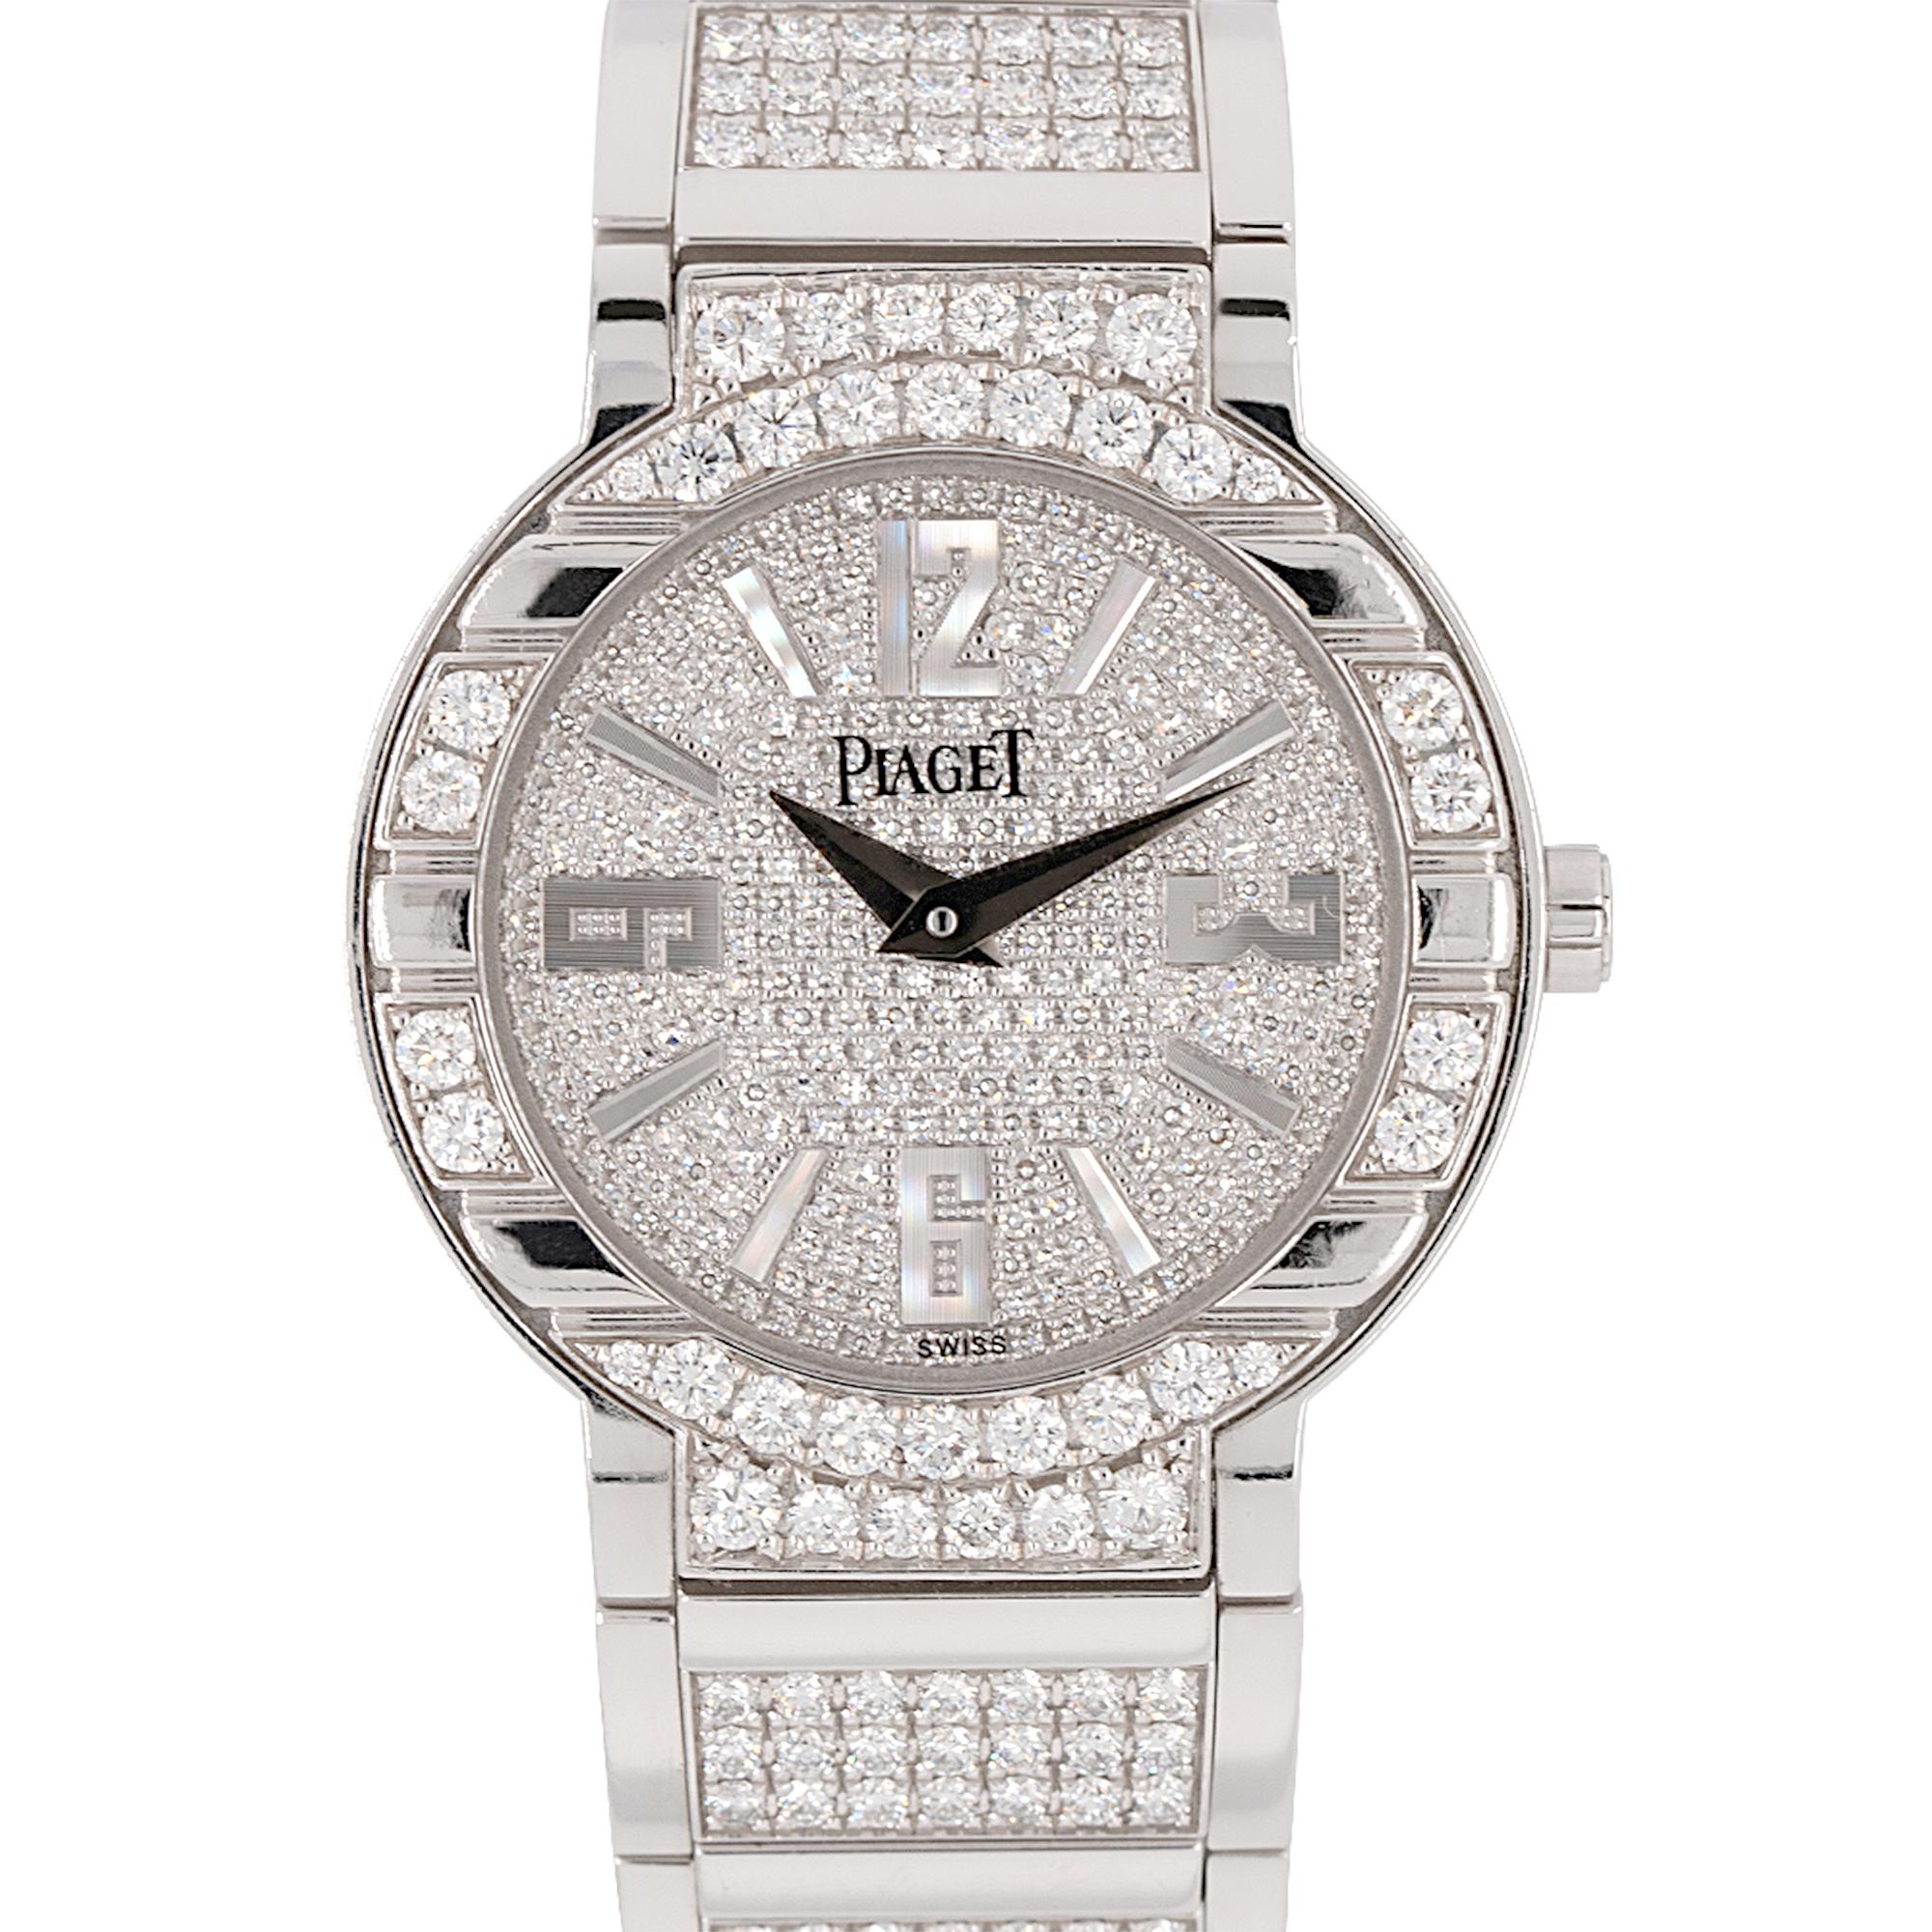 La Piaget Polo est une montre exquise qui incarne le dévouement de la marque au luxe et à l'artisanat. Avec son boîtier en or blanc 18 carats et son diamètre de 32 mm, elle respire l'élégance et la sophistication. Le cadran pavé de diamants, orné